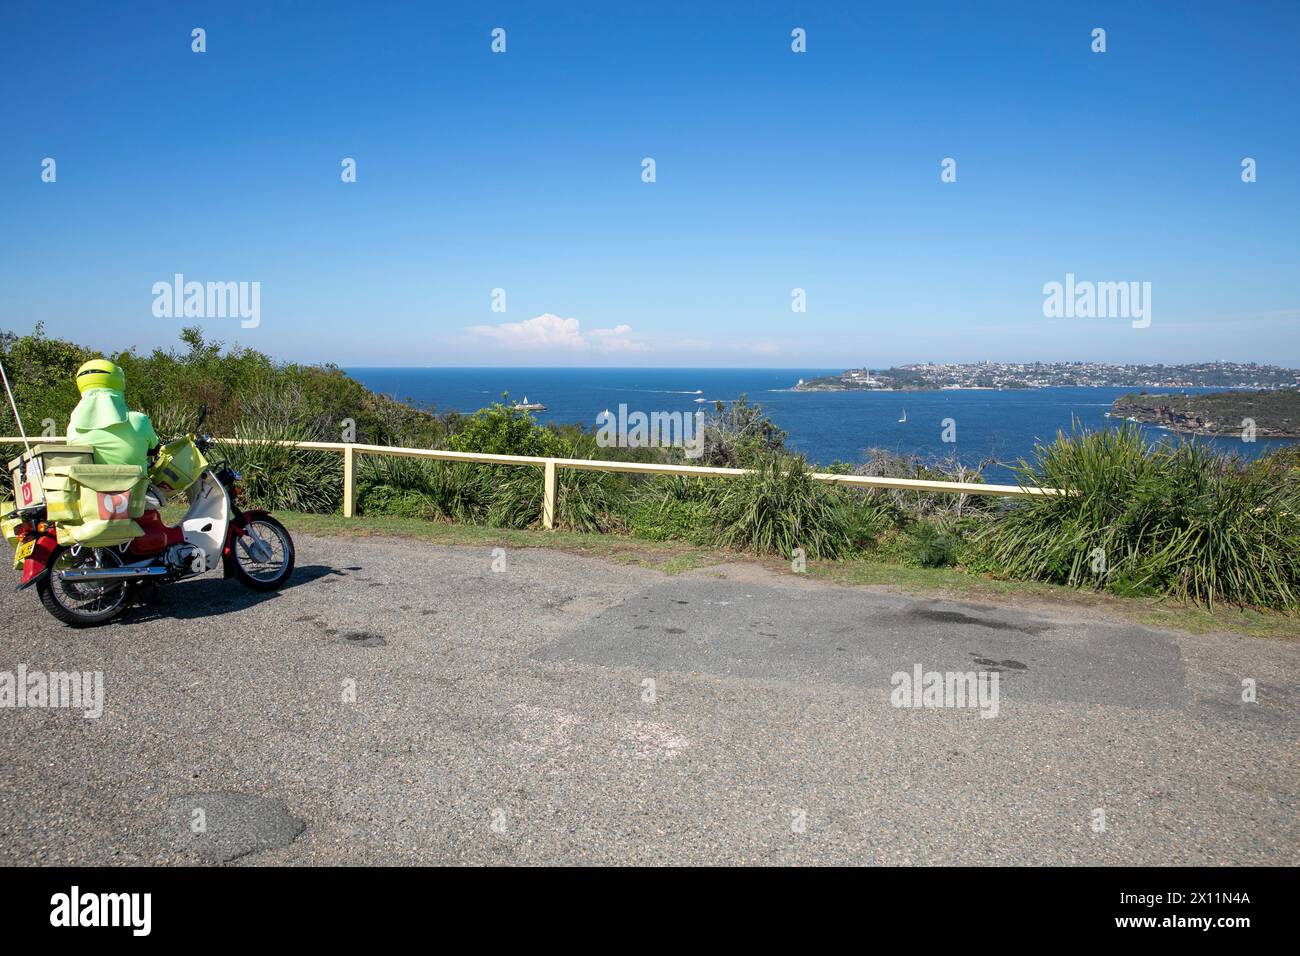 Australische Postman Postie in Sydney auf einer Pause mit Honda Motorrad genießt Blick auf den Hafen von Sydney von Dobroyd Head, Sydney, NSW, Australien Stockfoto